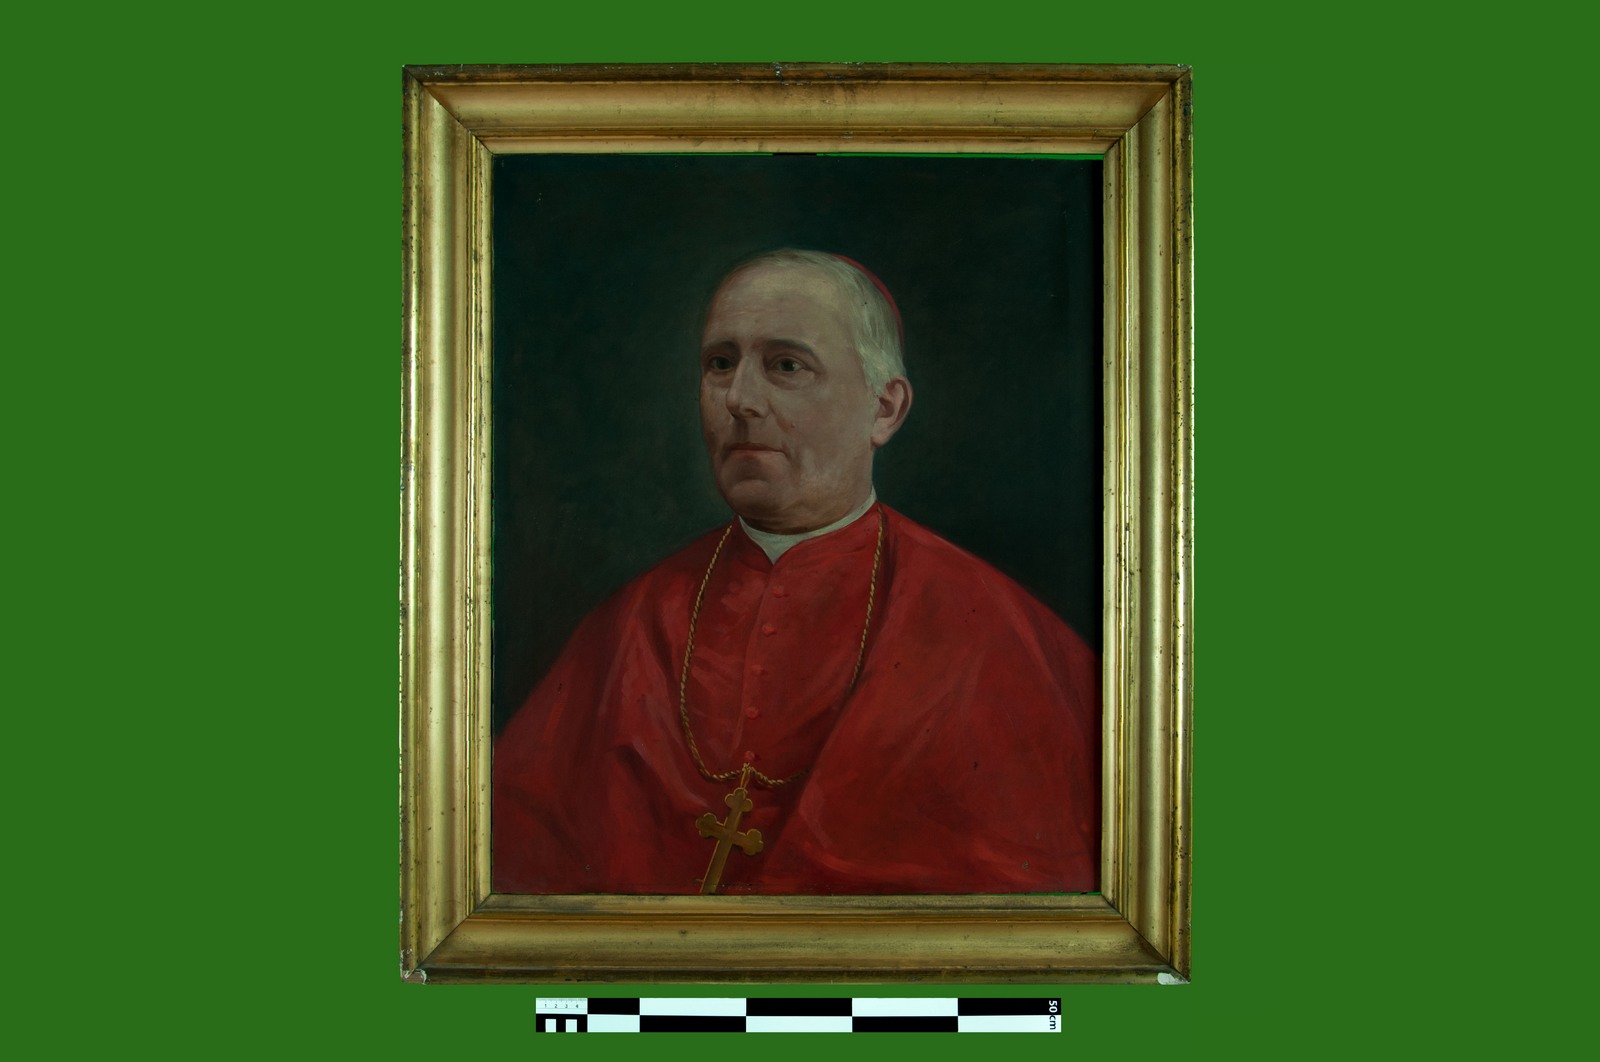 Cardinale Antonio Ermolao Paoletti